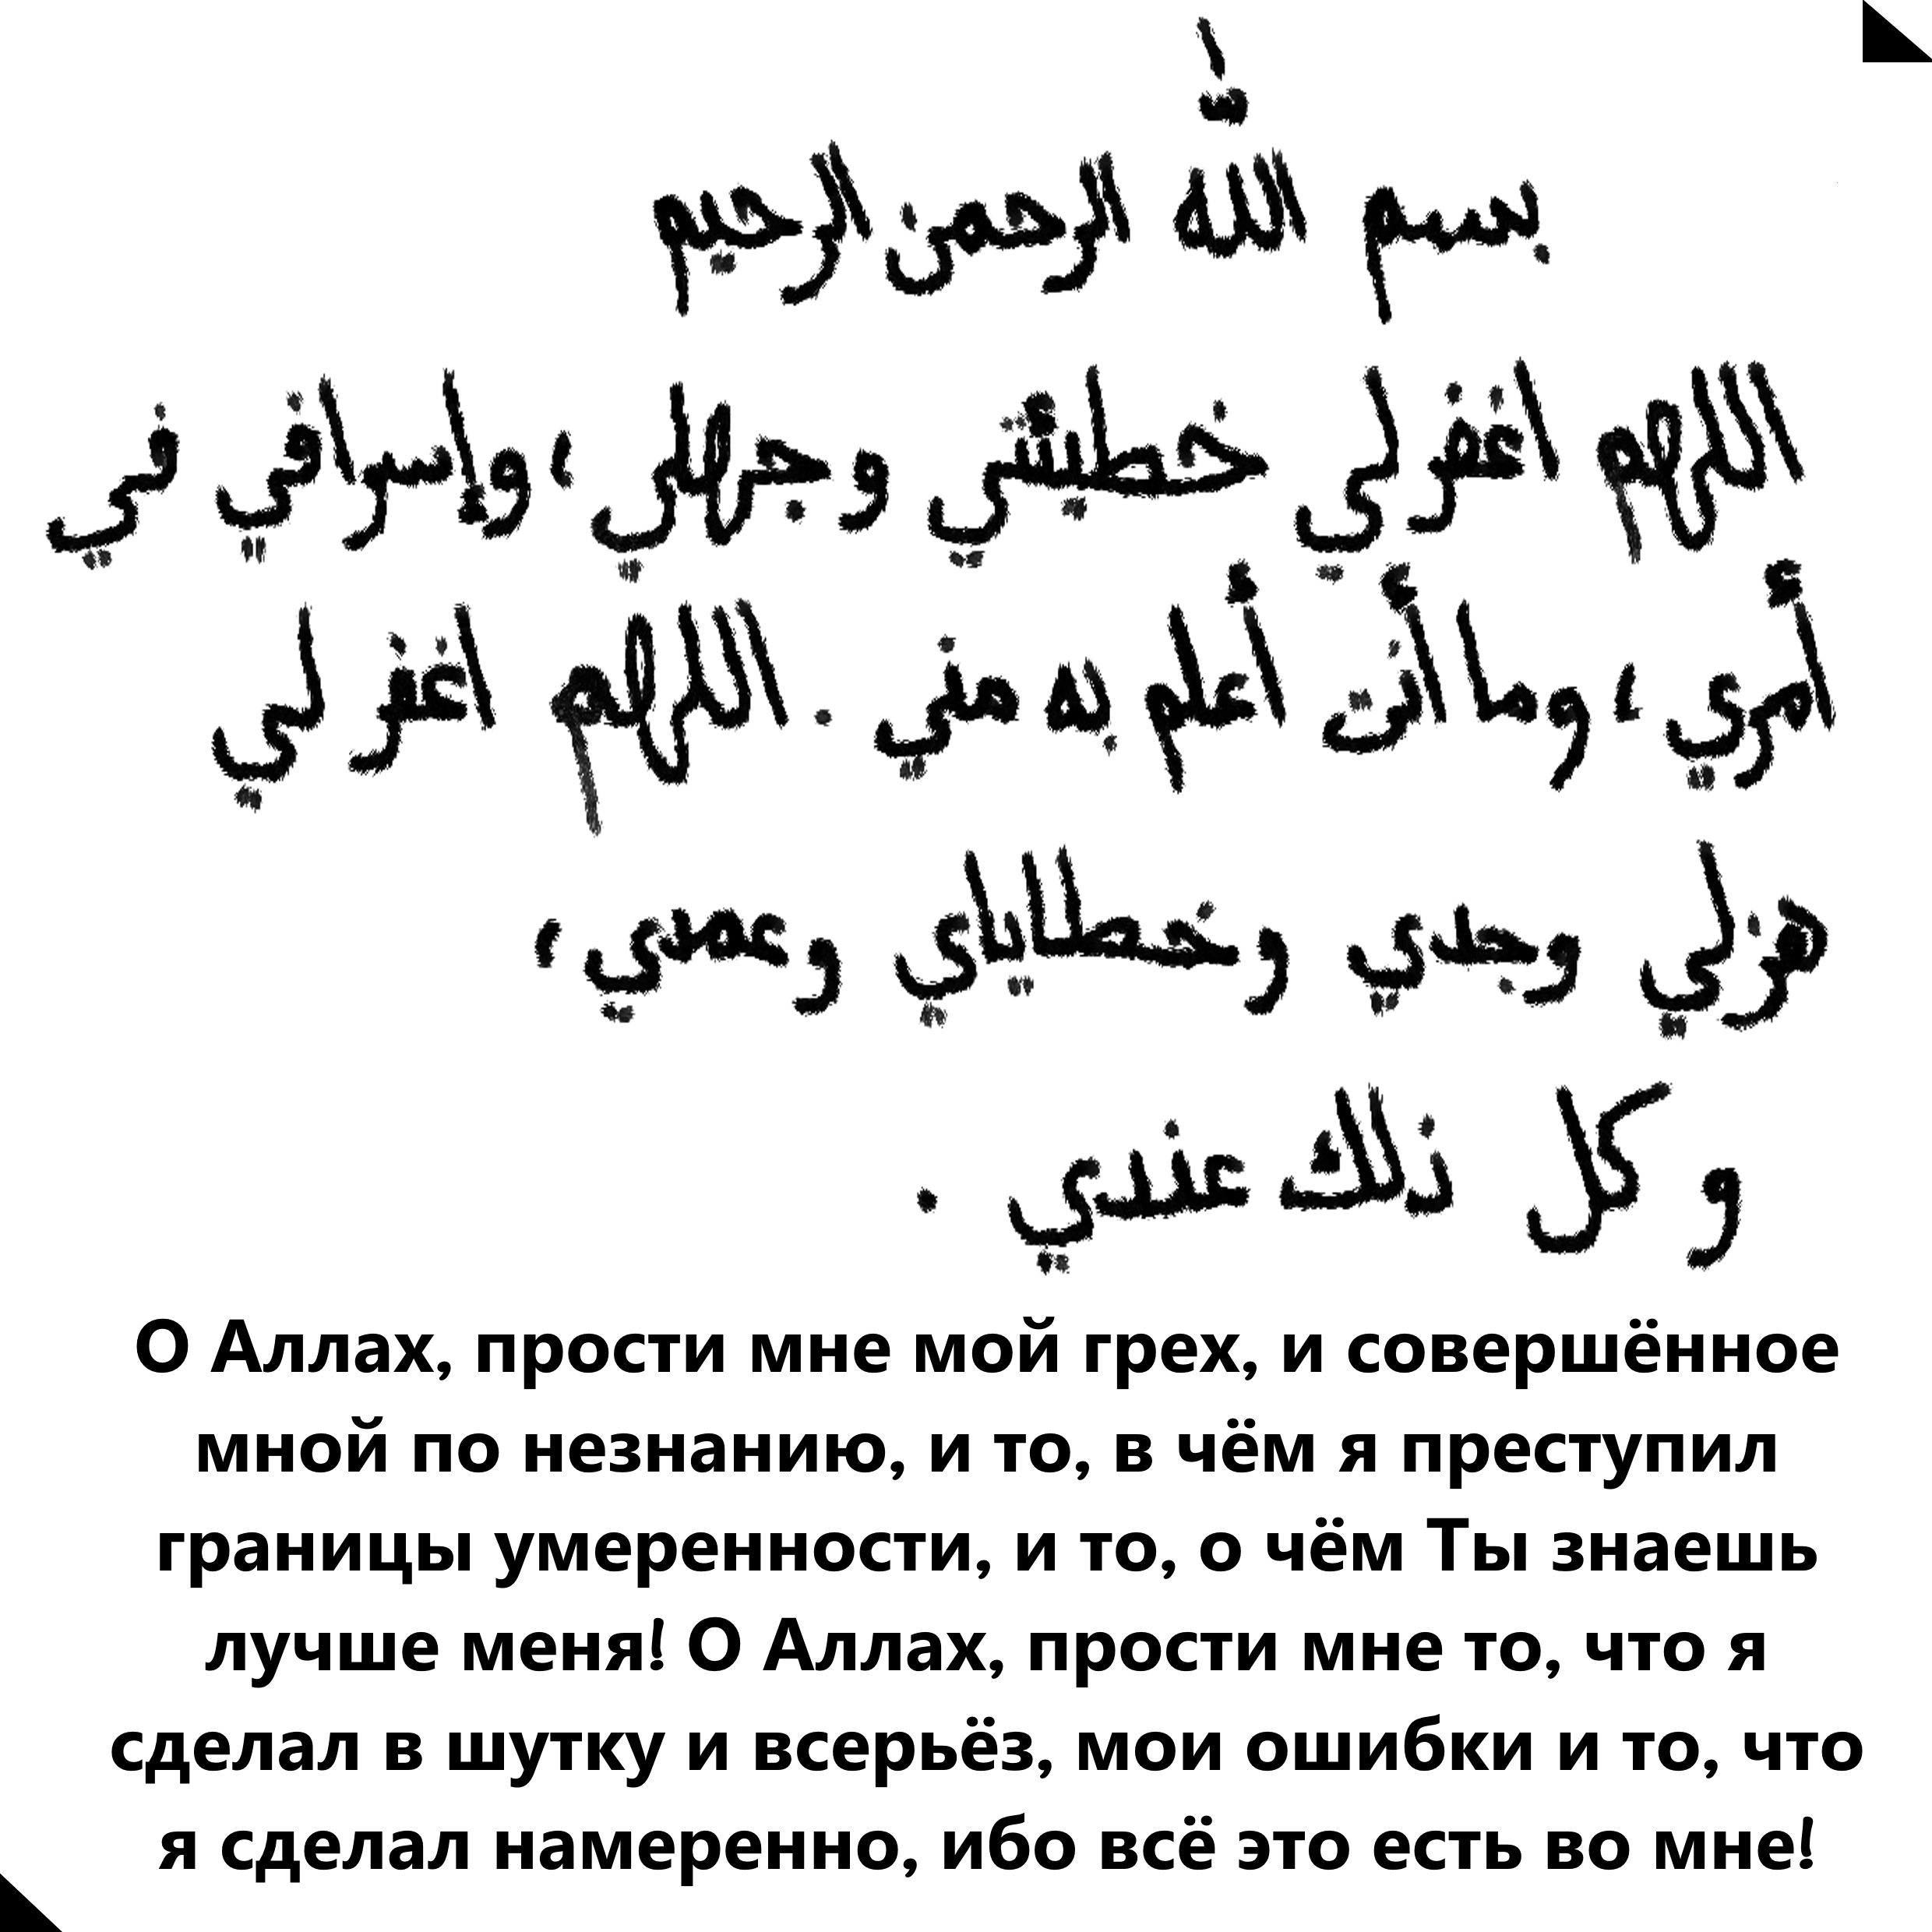 Слова молитвы мусульман. Молитва на арабском языке. Мусульманские молитвы на арабском языке. Масульманские малитвы на руском.